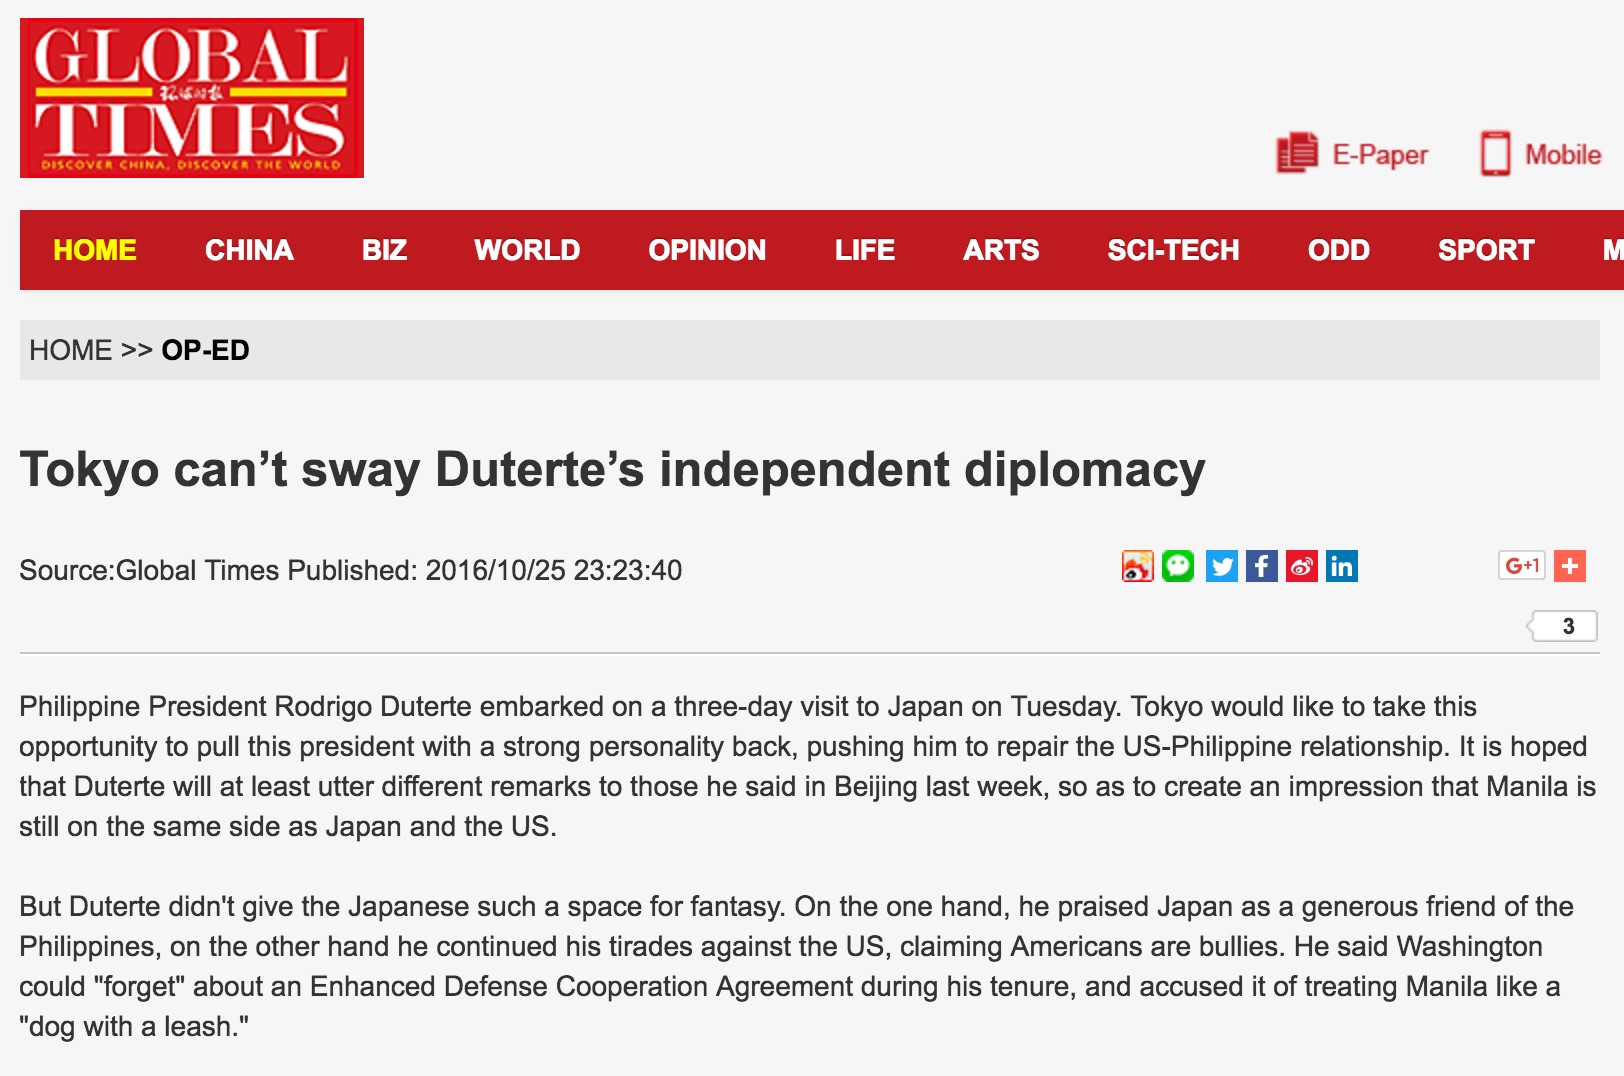 En annonçant sa séparation avec Washington, Duterte met en place une "diplomatie de l'indépendance". Copie d'écran du Global Times, le 26 octobre 2016.